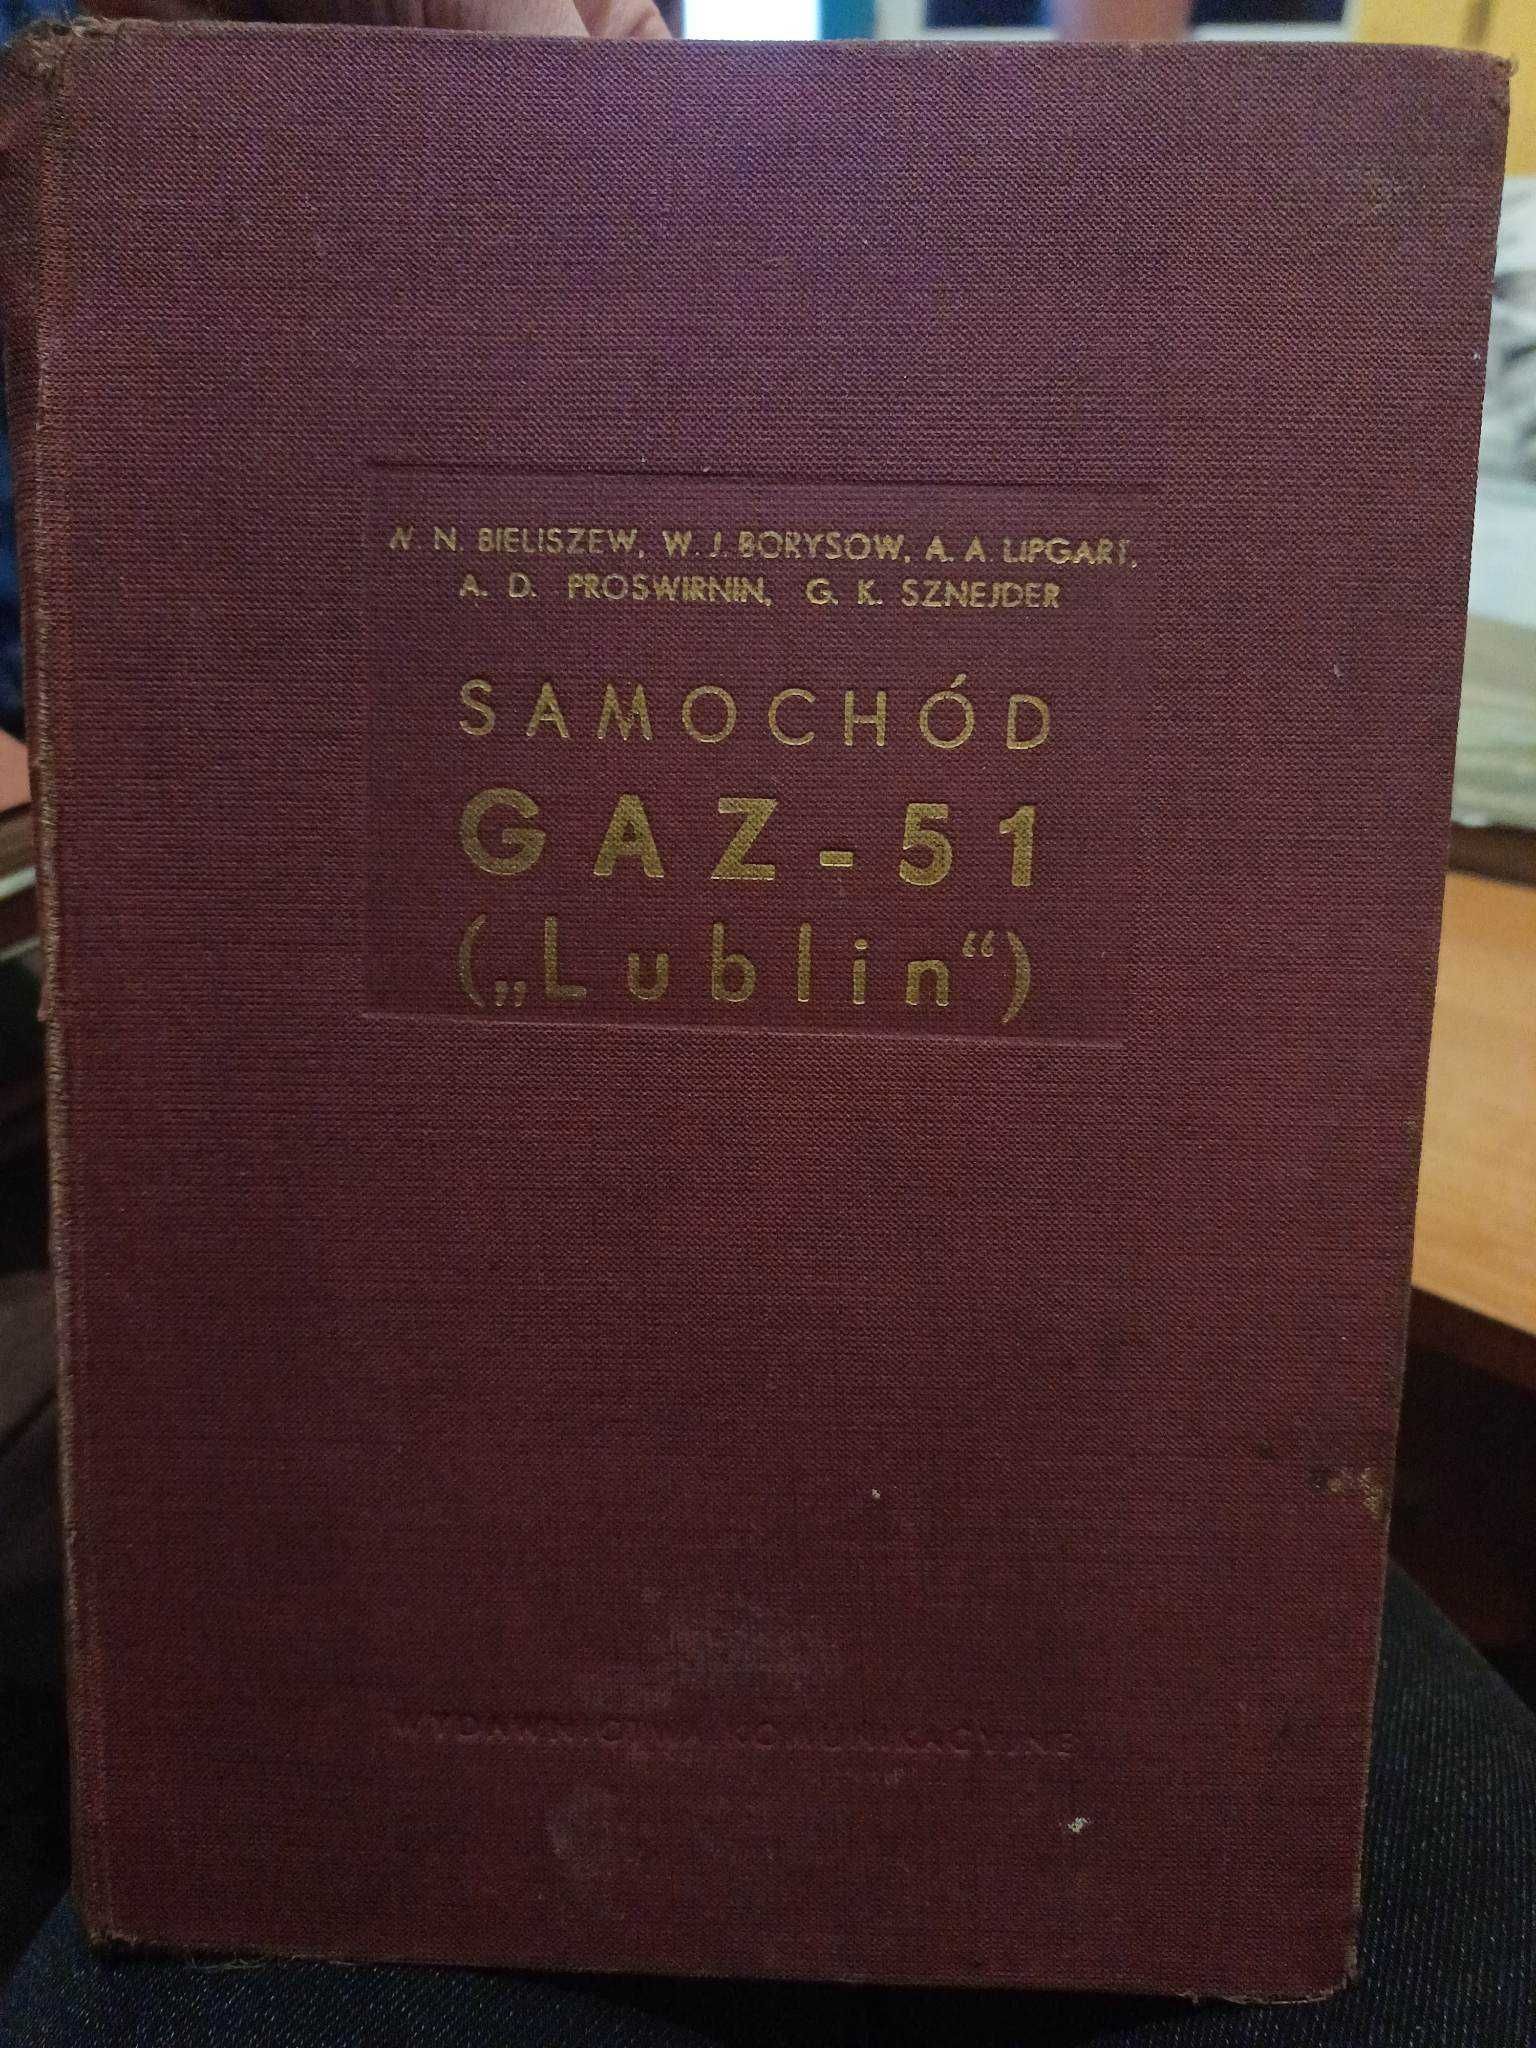 Samochód (Gaz-51) "Lublin" oryginalna instrukcja obsługi 1954r.